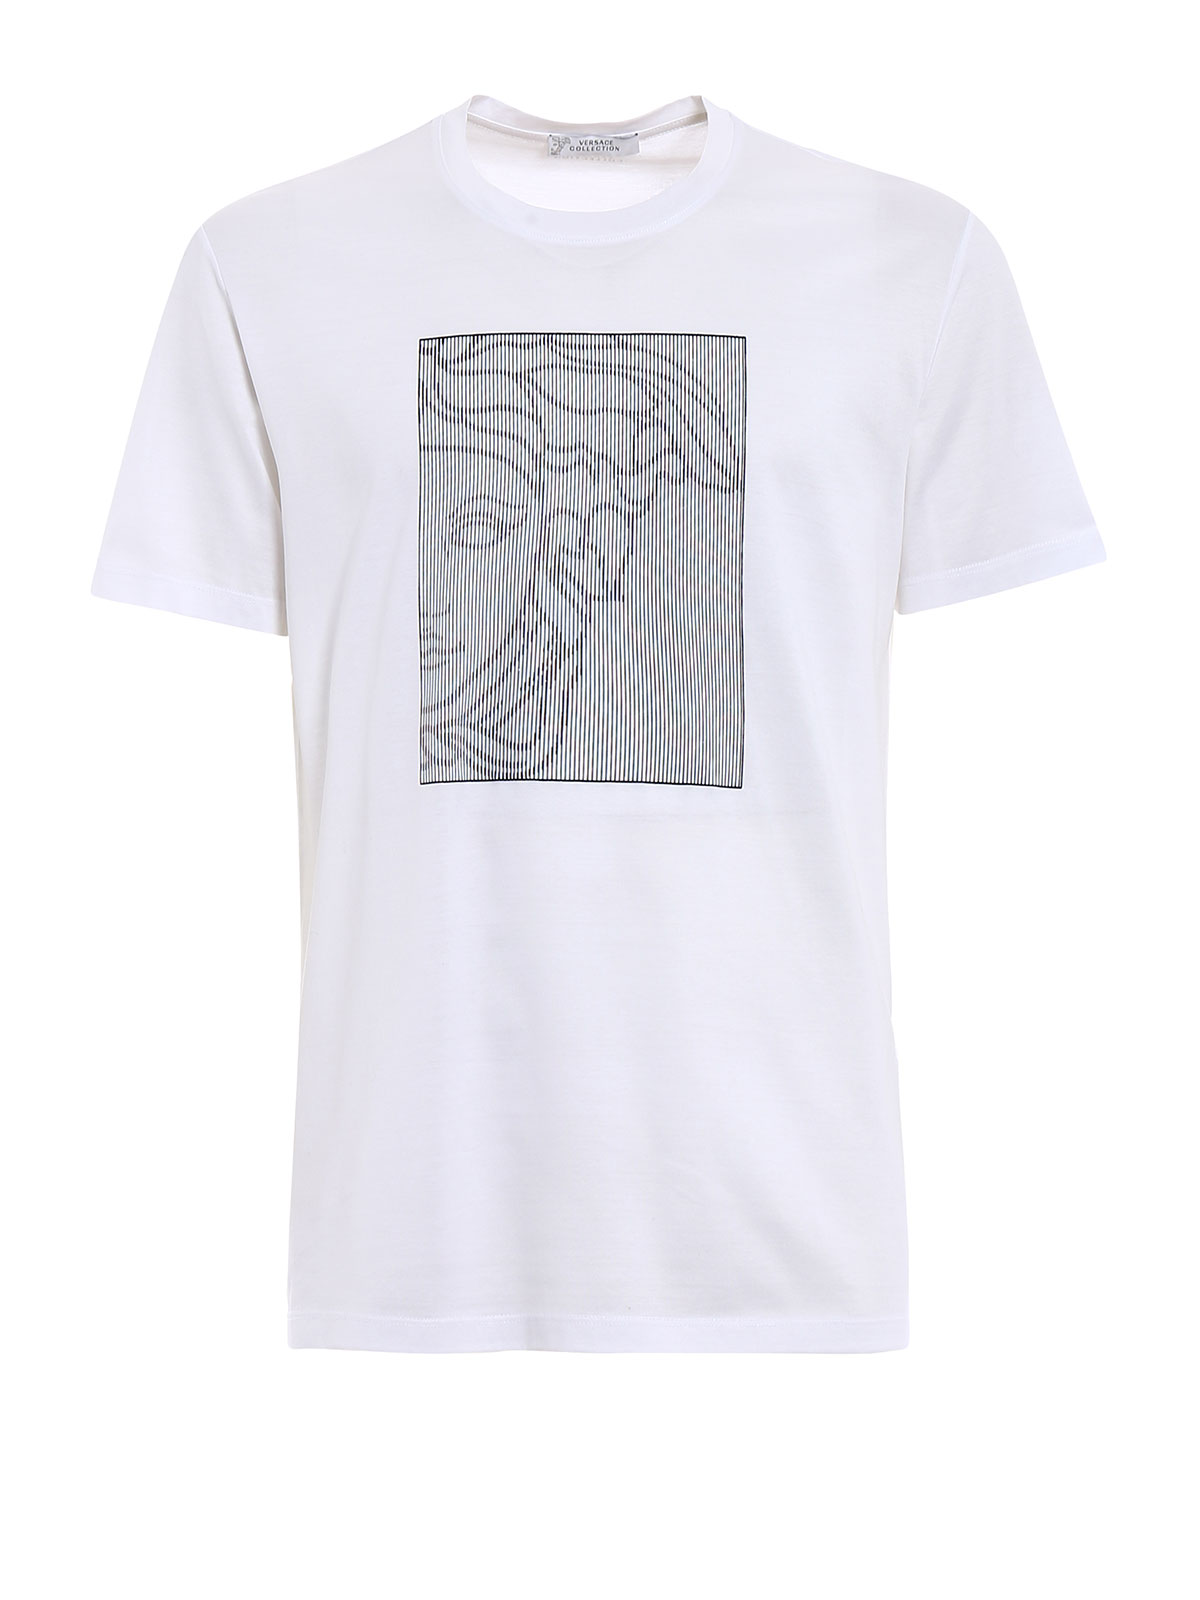 Striped Medusa Head white T-shirt 